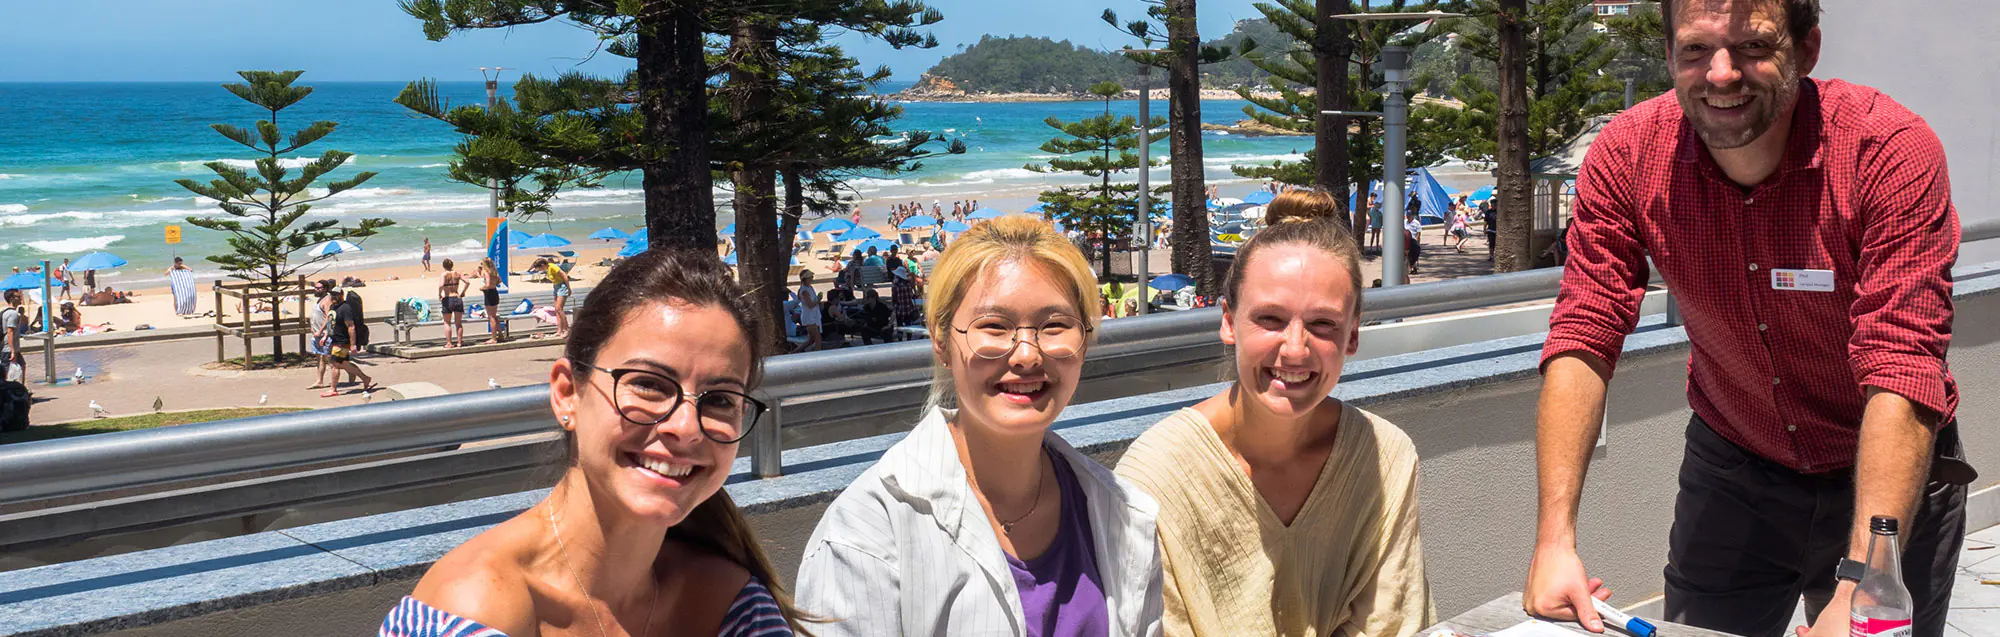 Als Bildungsurlaub anerkannte Sprachkurse bei Lexis Sydney Manly Beach